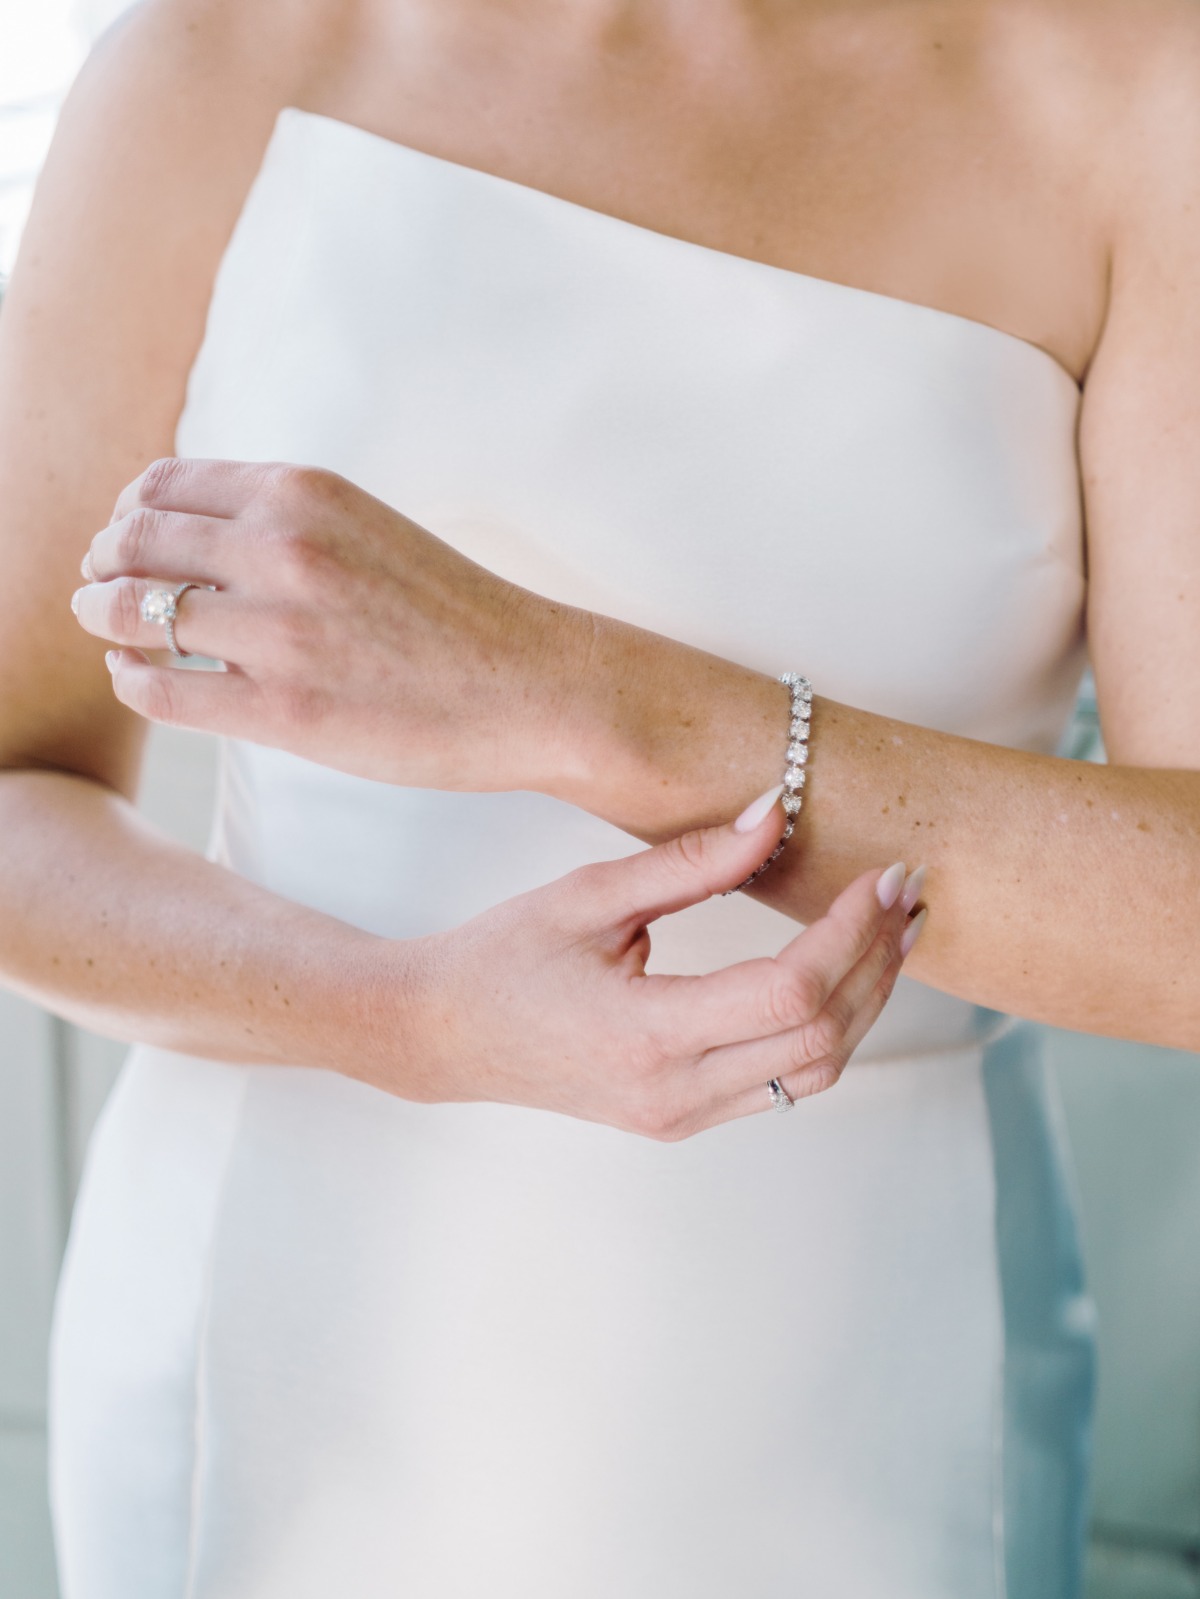 diamond wedding bracelet